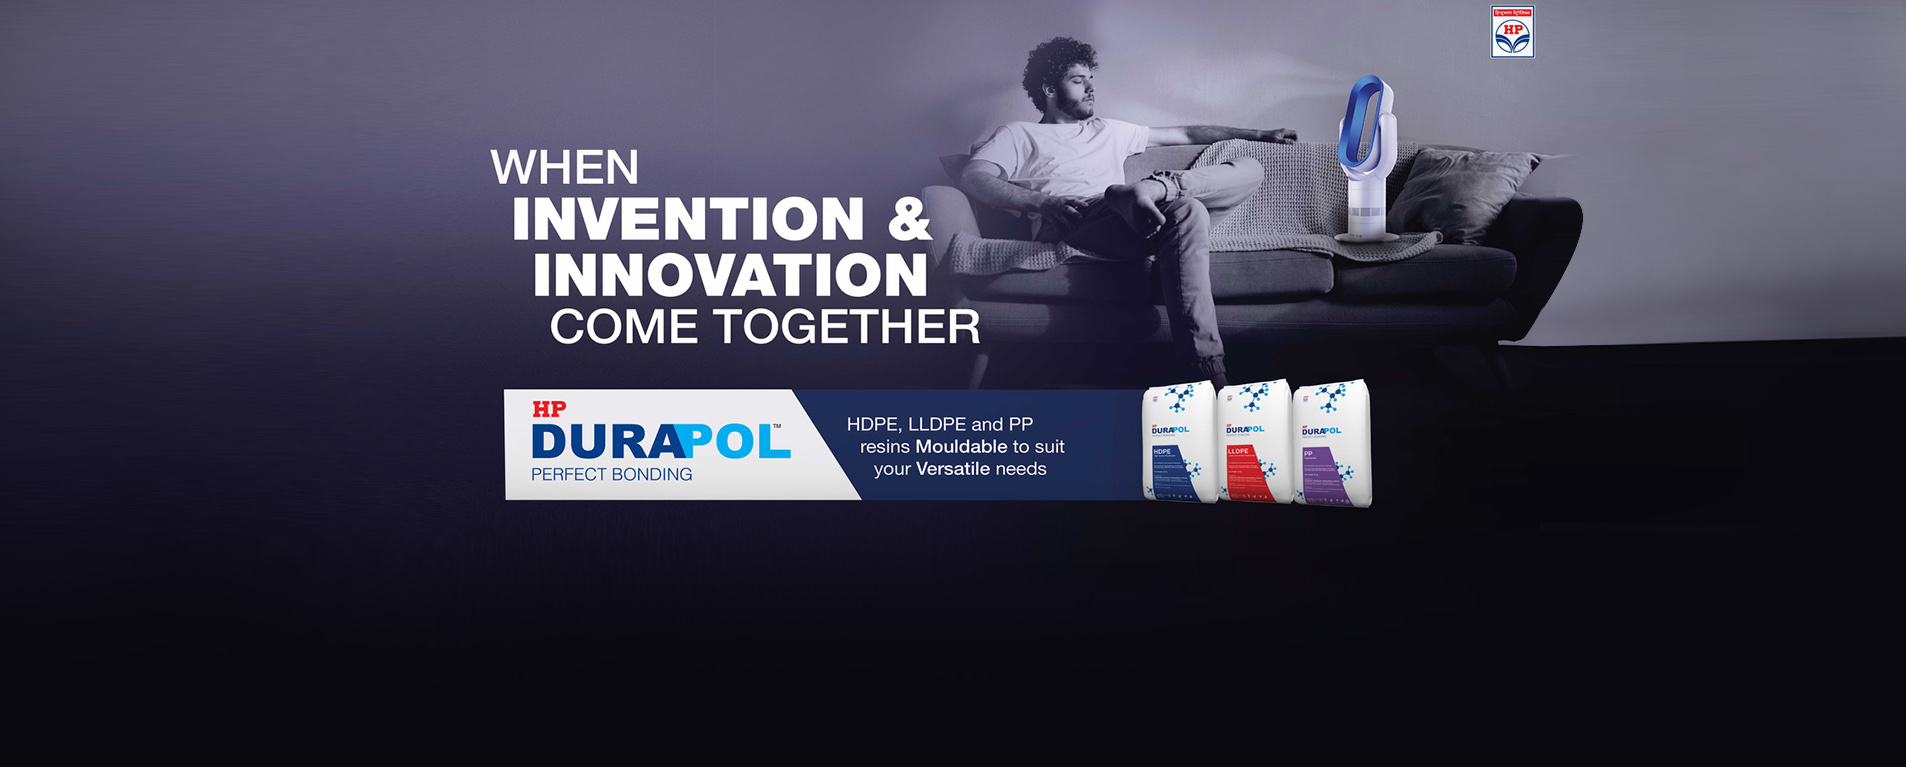 Durapol Brand Campaign - 10